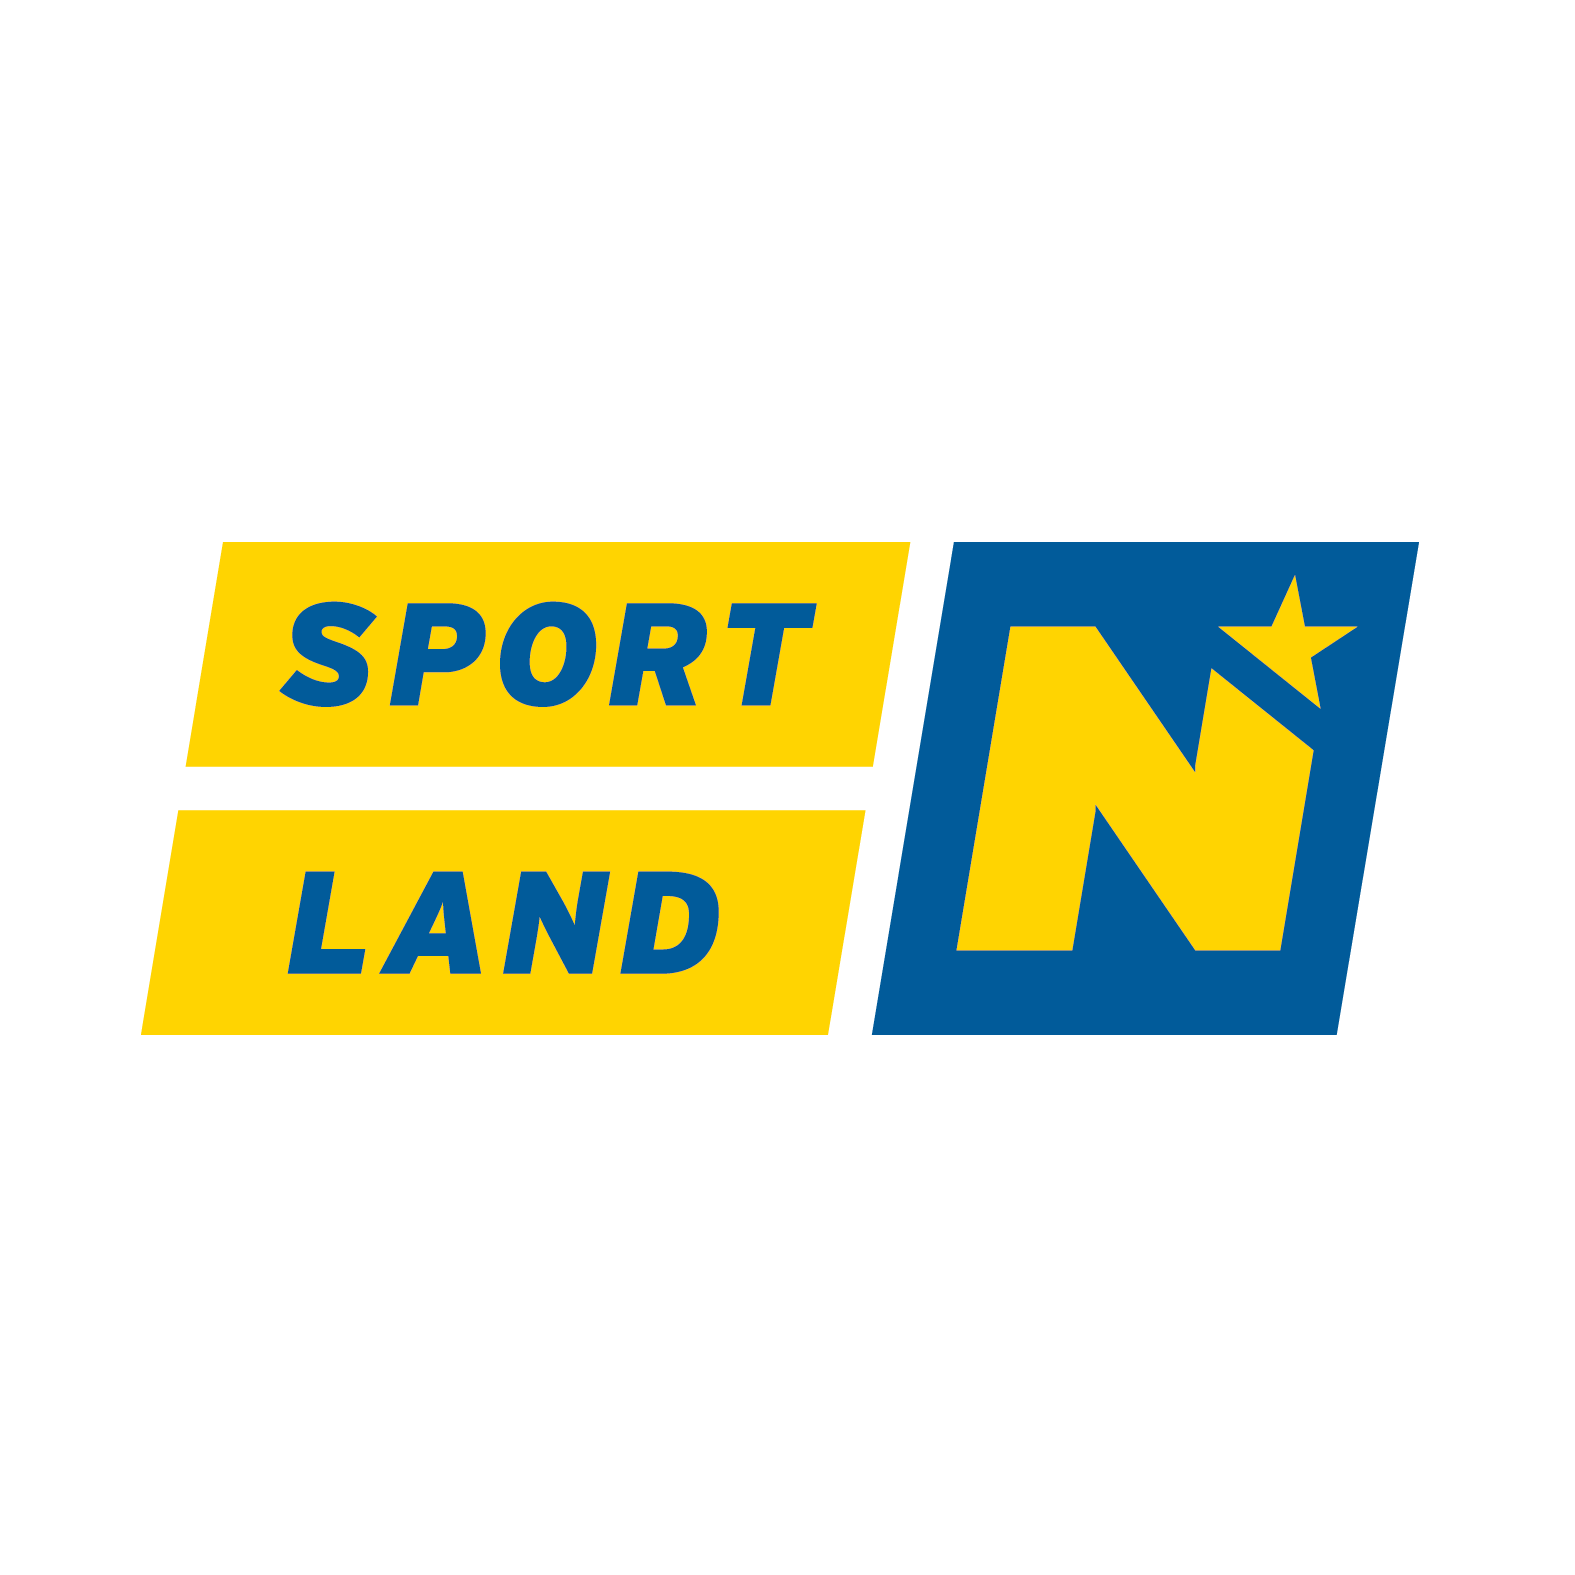 Sportland Niederösterreich